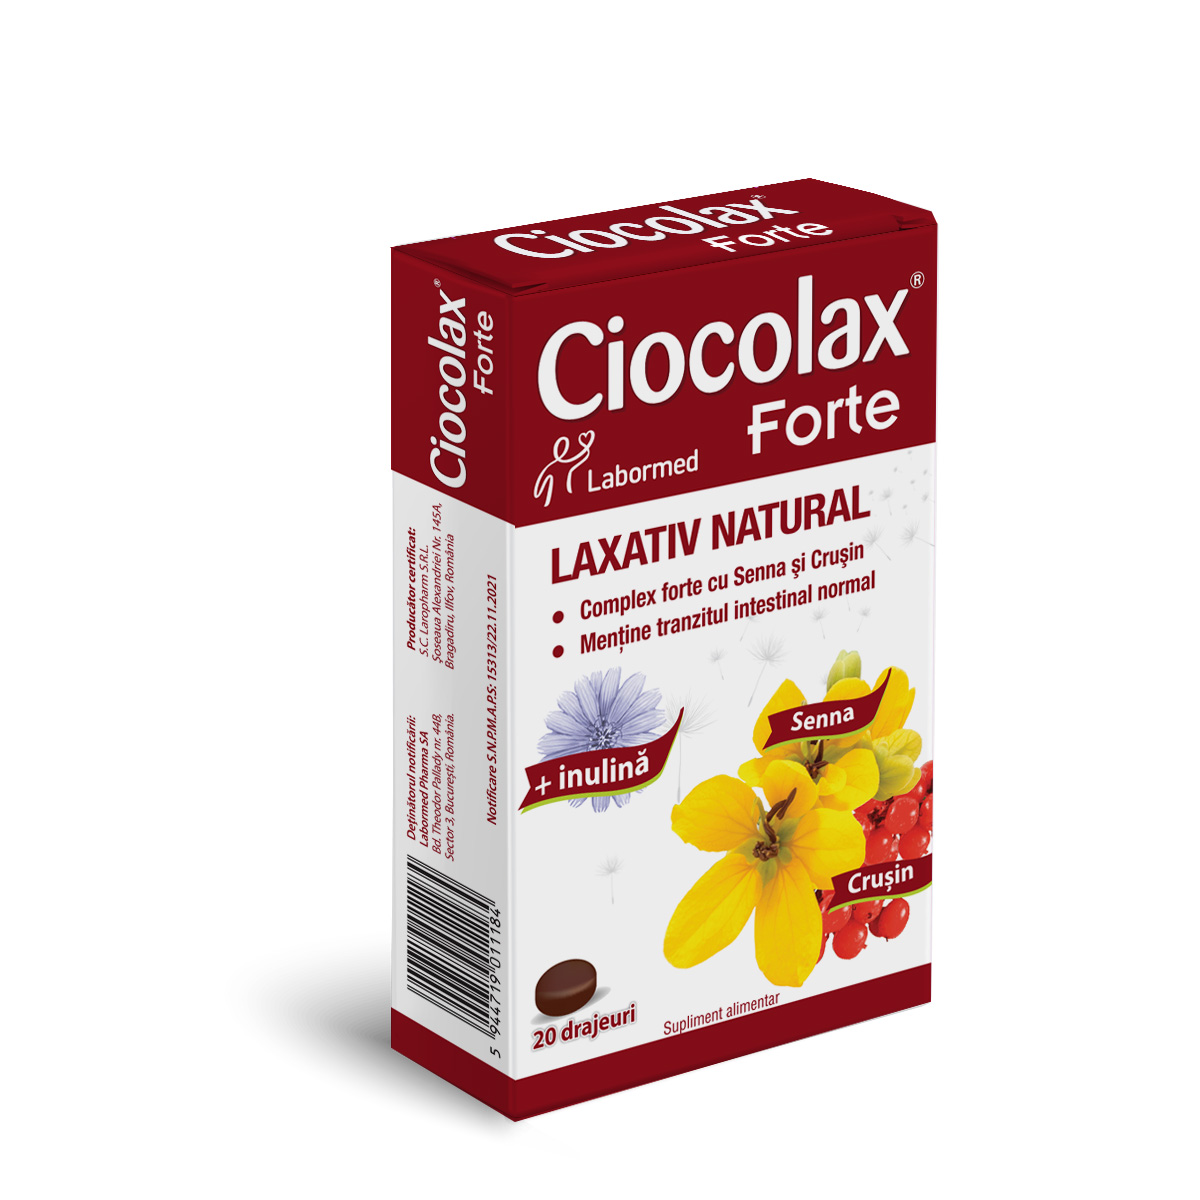 Ciocolax Forte, 20 drajeuri, Solacium